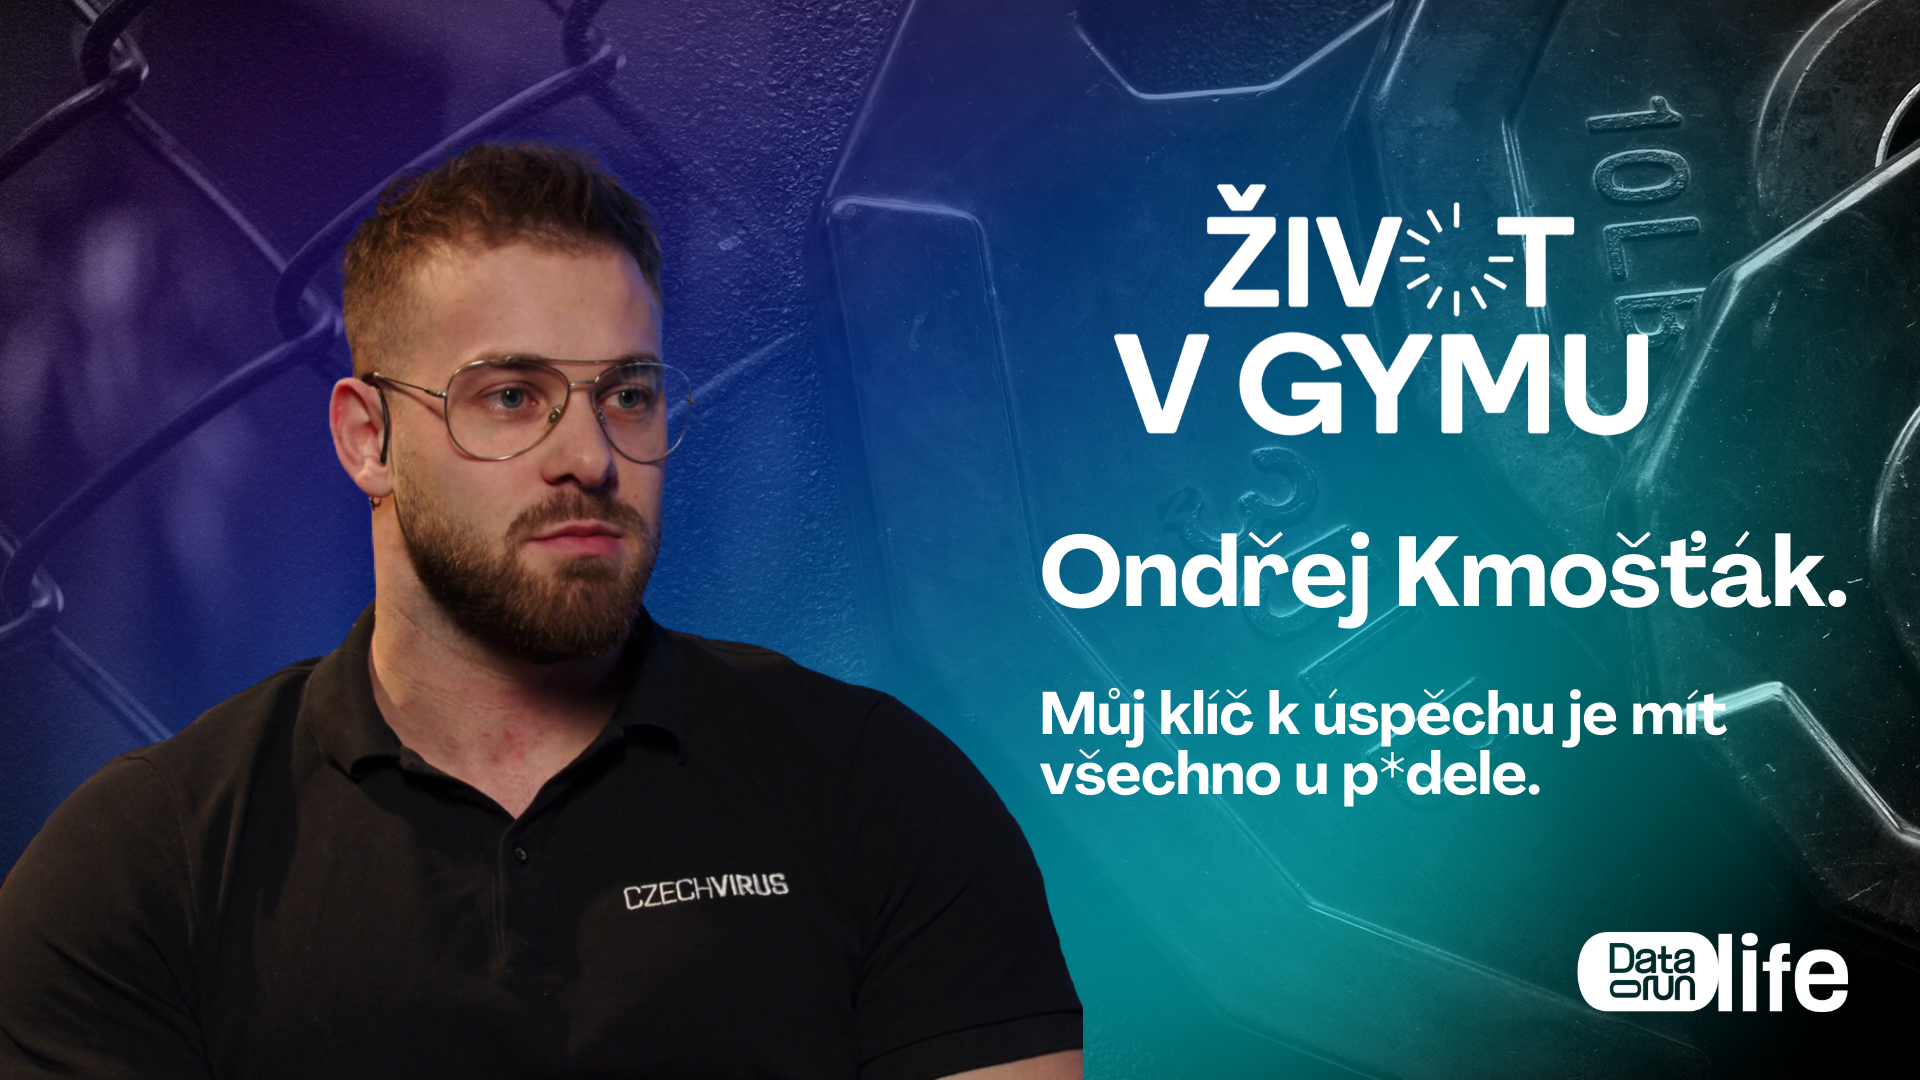 Preview of Ondřej Kmošťák: "Můj klíč k úspěchu je mít všechno u p*dele", tvrdí nejúspěšnější český fitnesák.